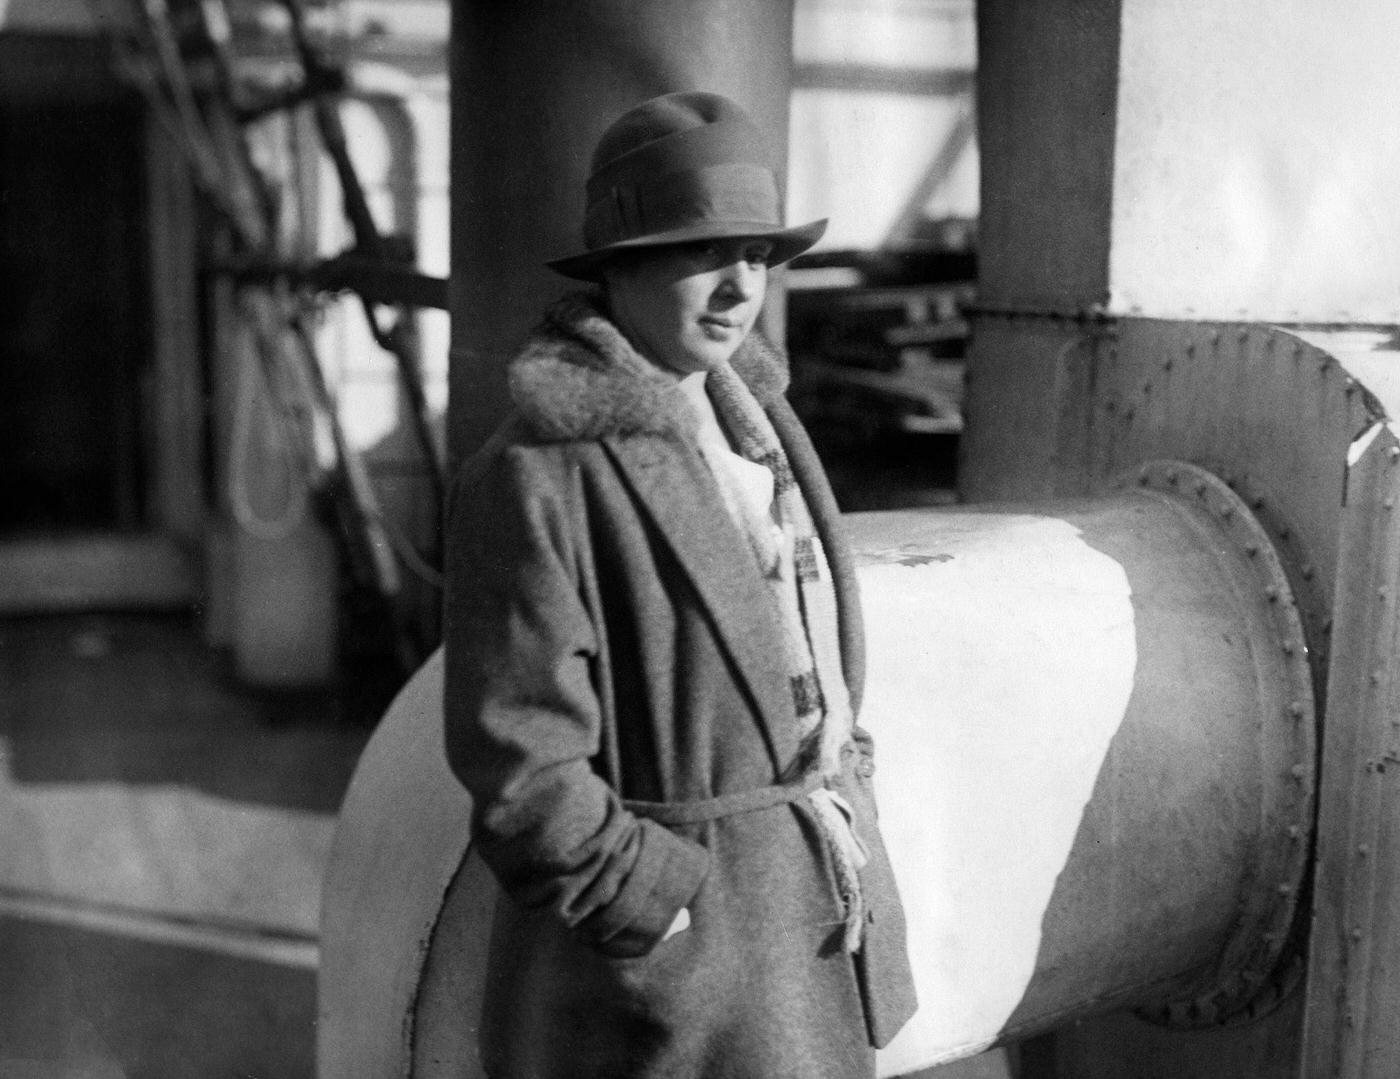 Clärenore Stinnes as a Passenger on the Steamer Albert Ballin, 1926